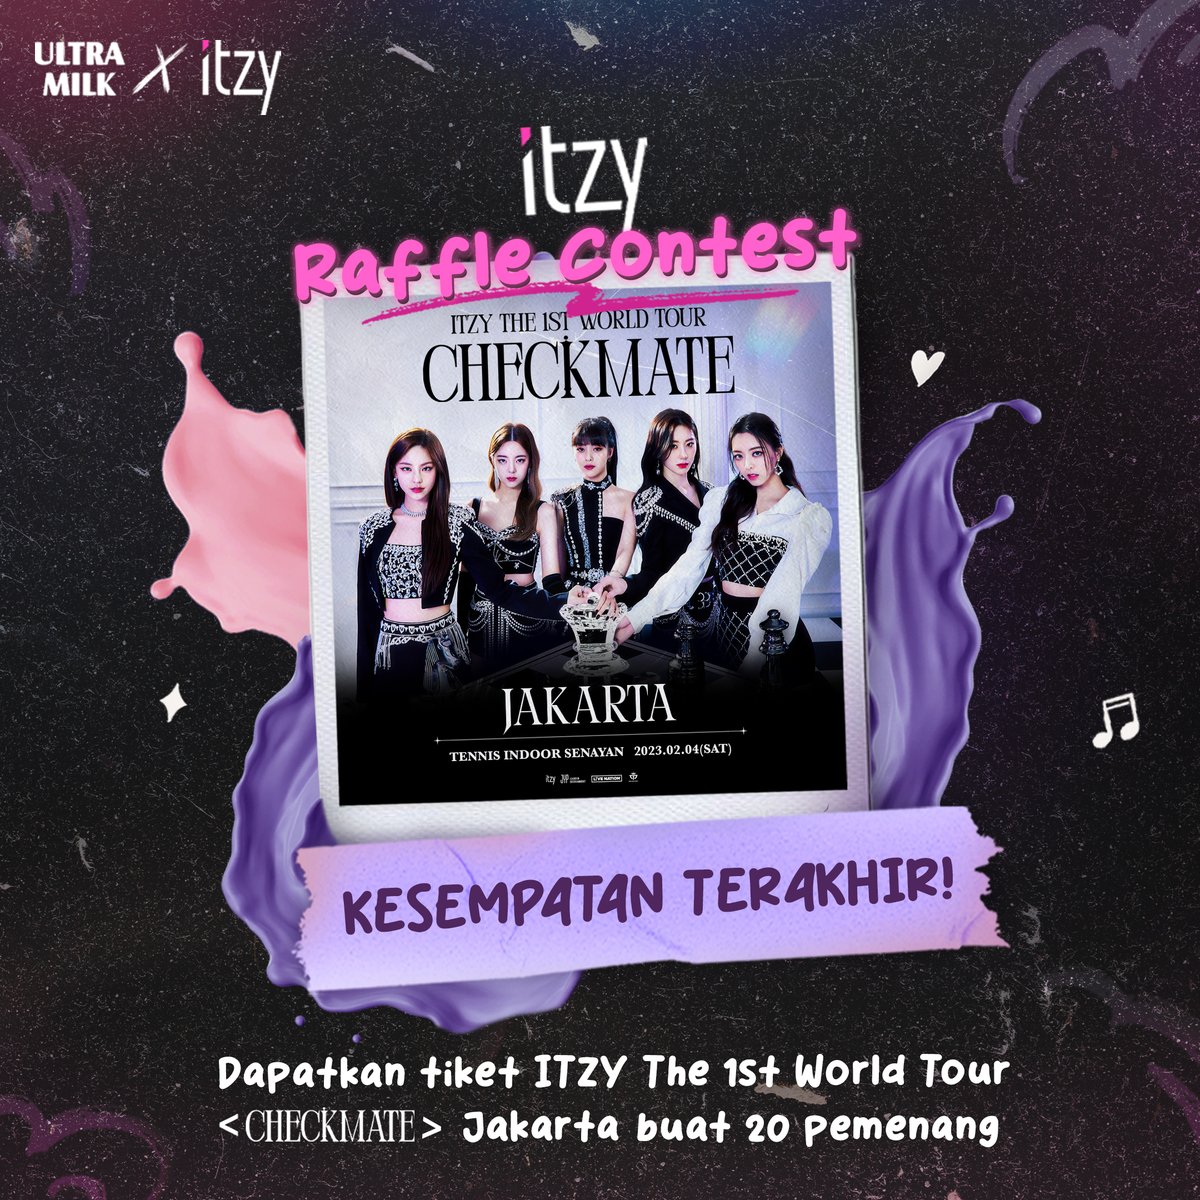 Midzy kumpul yuk! Kesempatan terakhir kamu buat dapetin tiket konser ITZY di Jakarta. Sebutkan alasan kenapa kamu pengen banget nonton ITZY + mention 3 temen kamu + hashtag #DontStopYourMove Jangan lupa follow Twitter @ultramym & Retweet tweet ini! Ditunggu sampe besok yaa